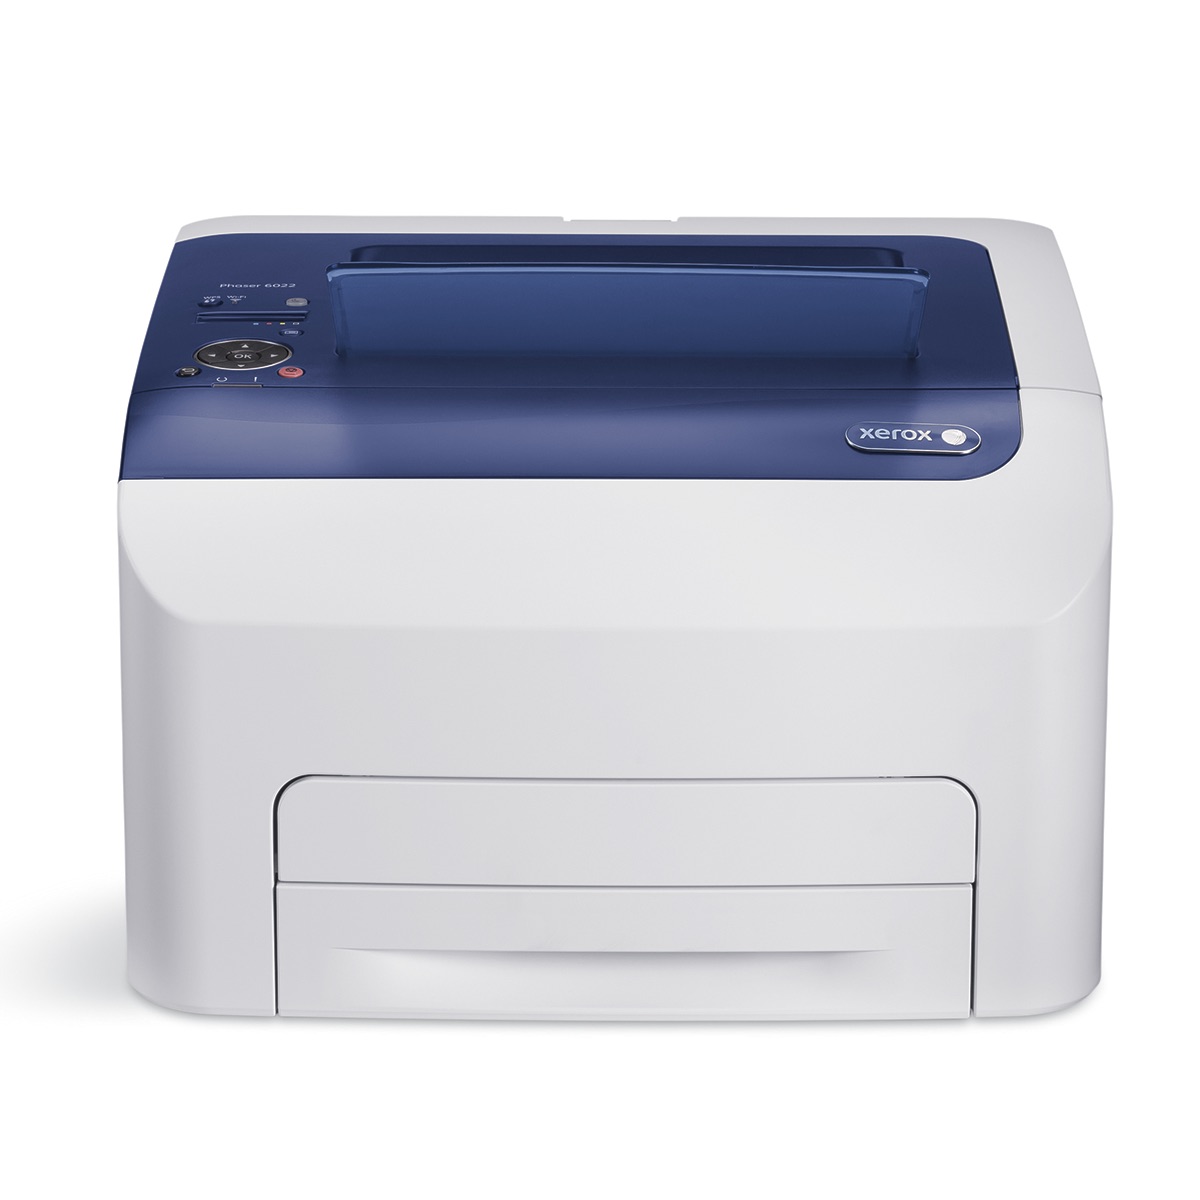 Xerox Printers:  The Xerox Phaser 6022NI Printer